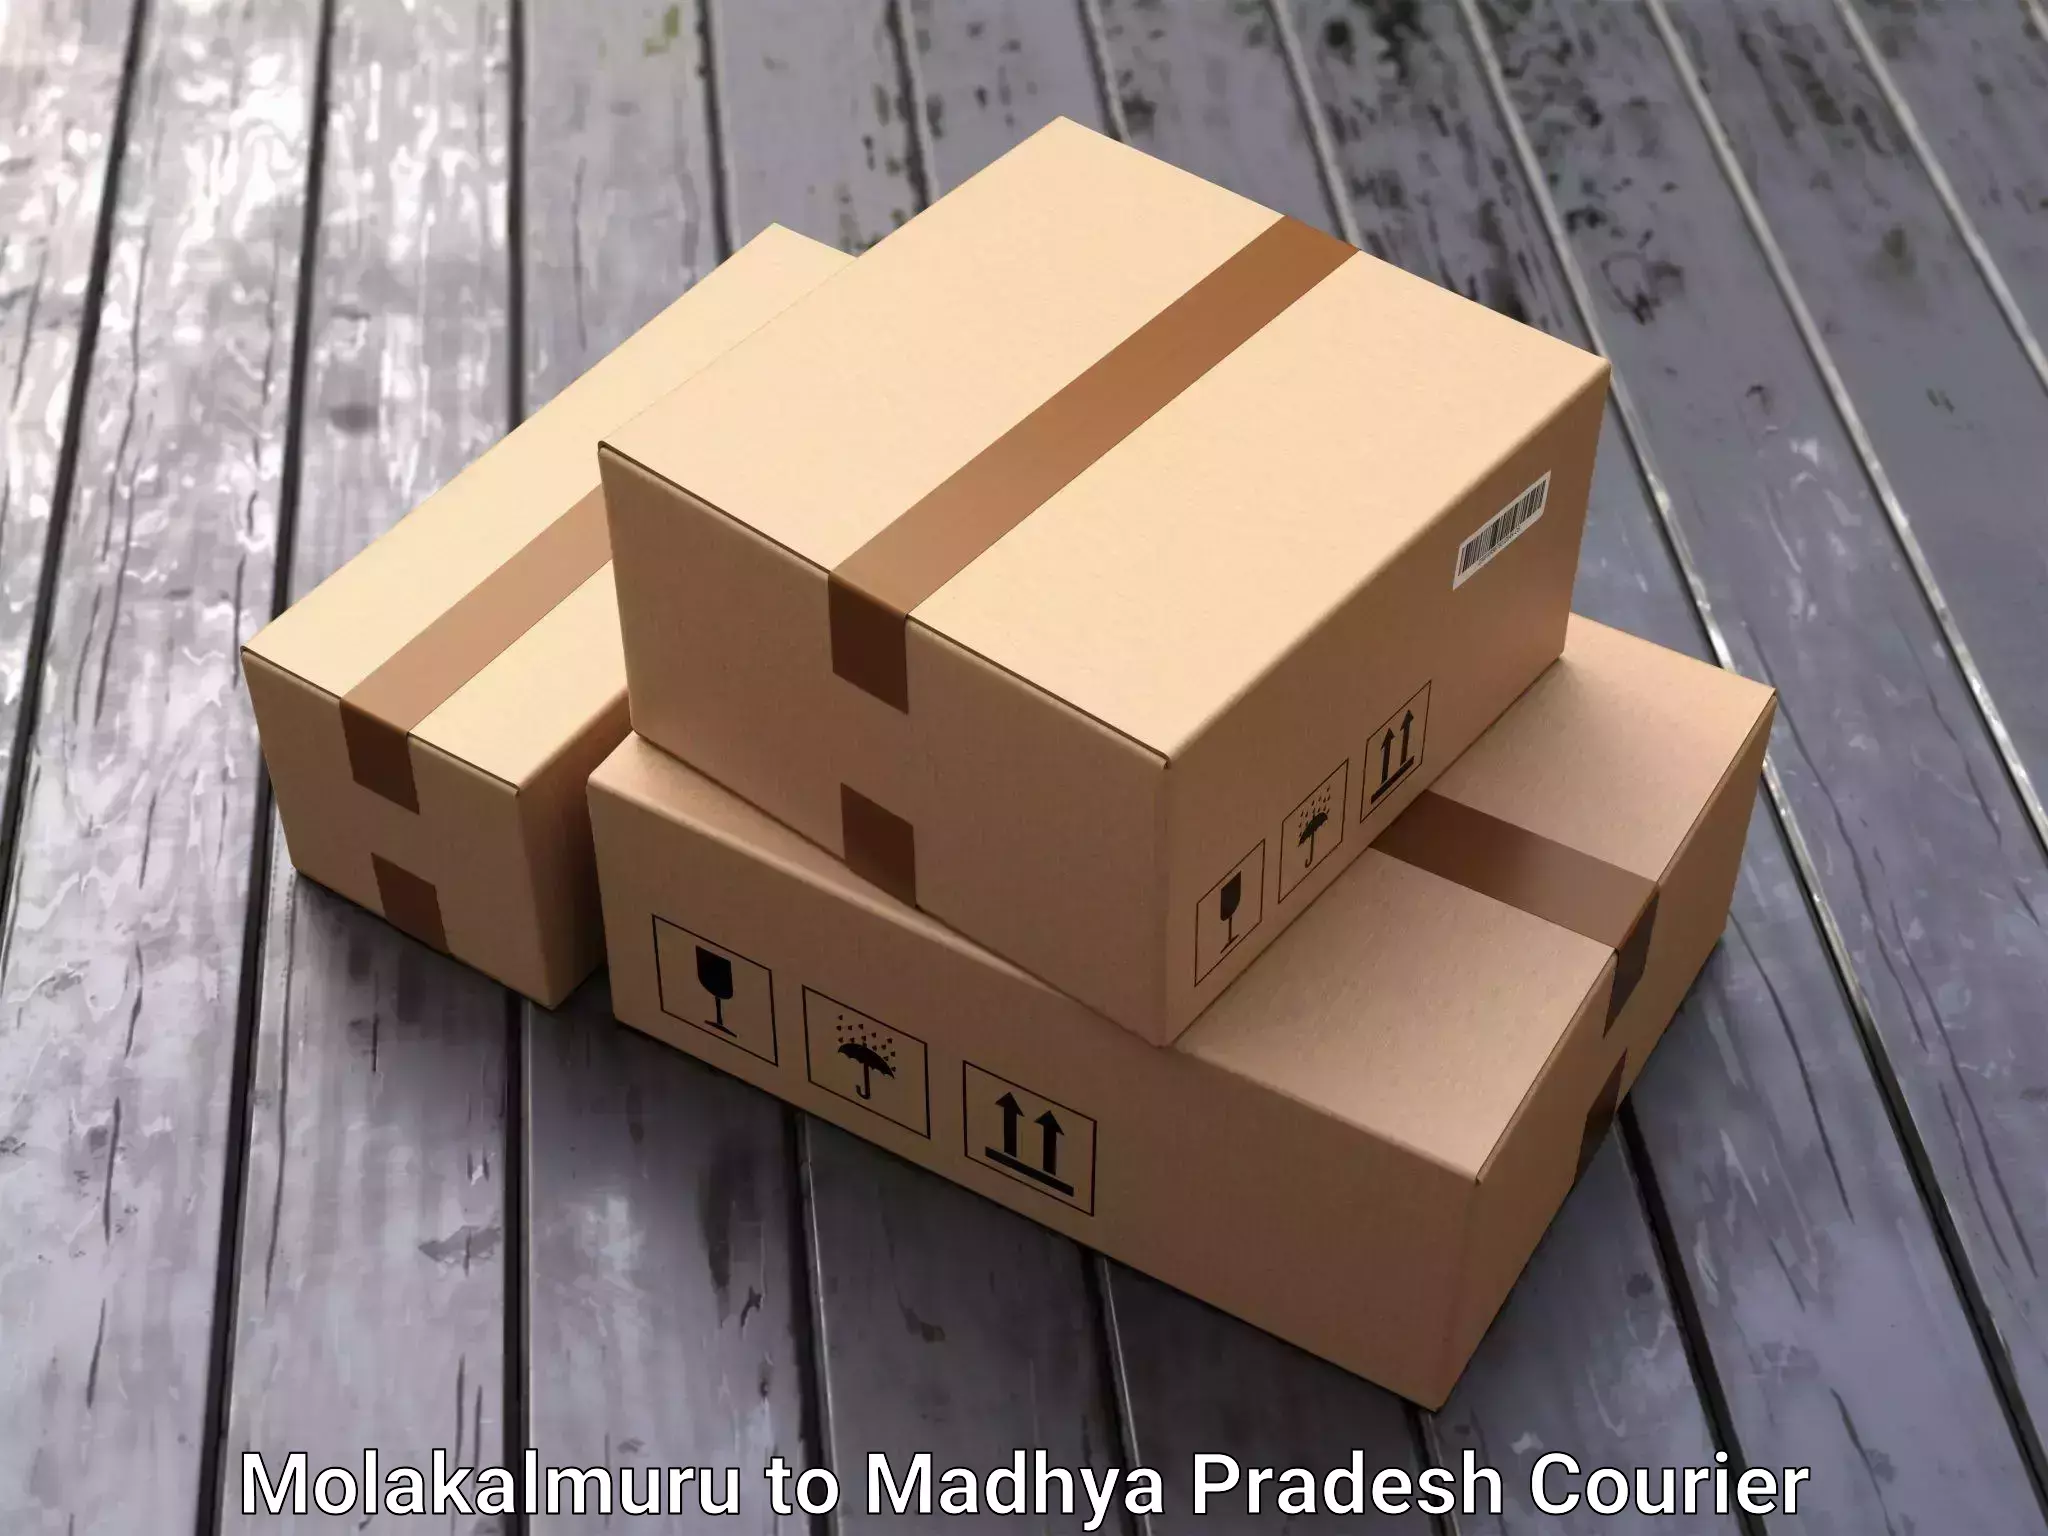 Trusted household movers Molakalmuru to Madhya Pradesh